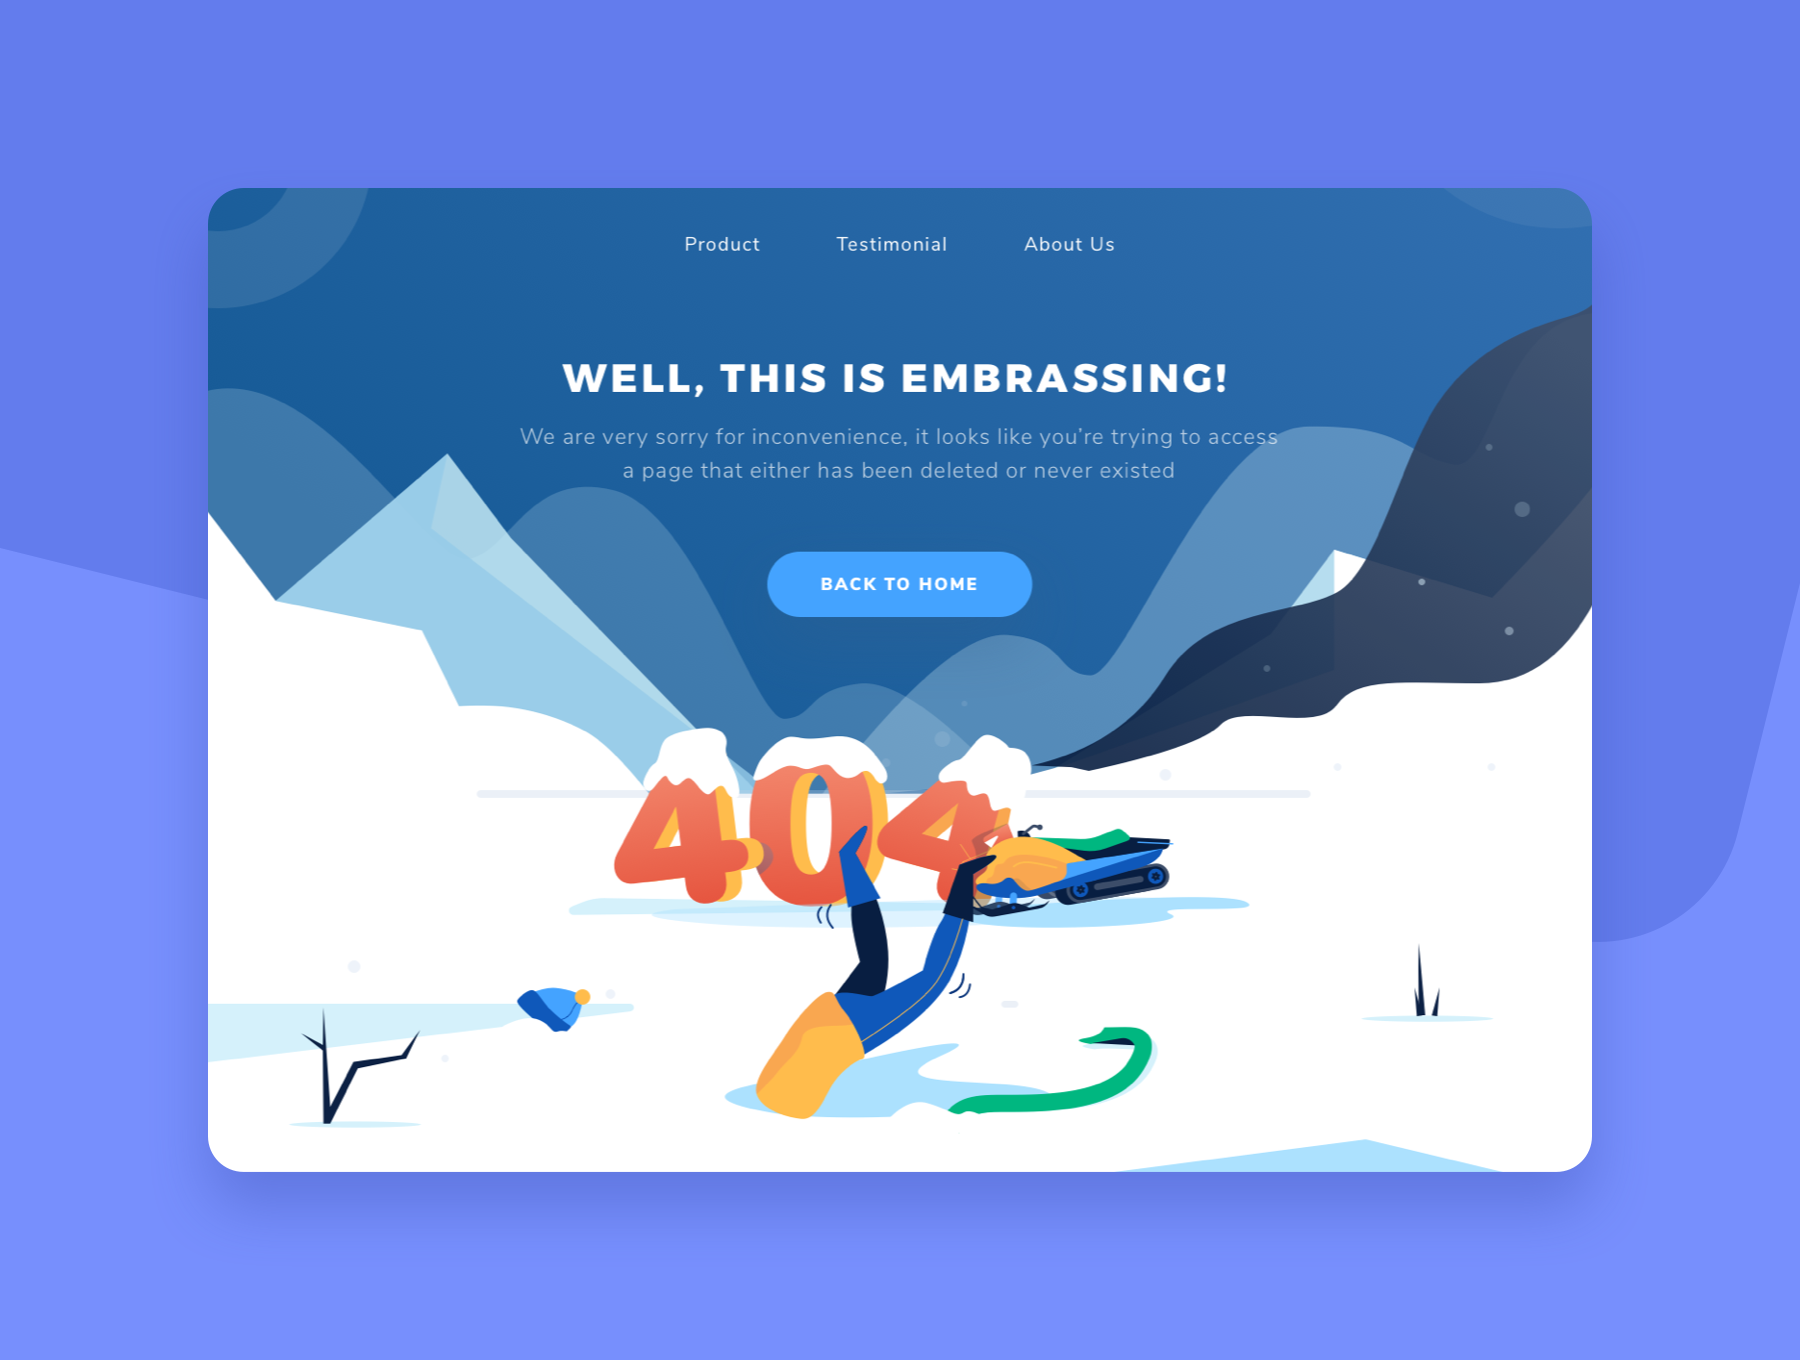 第一素材下午茶：冬季雪地主题网站404错误页面矢量插画素材插图(5)